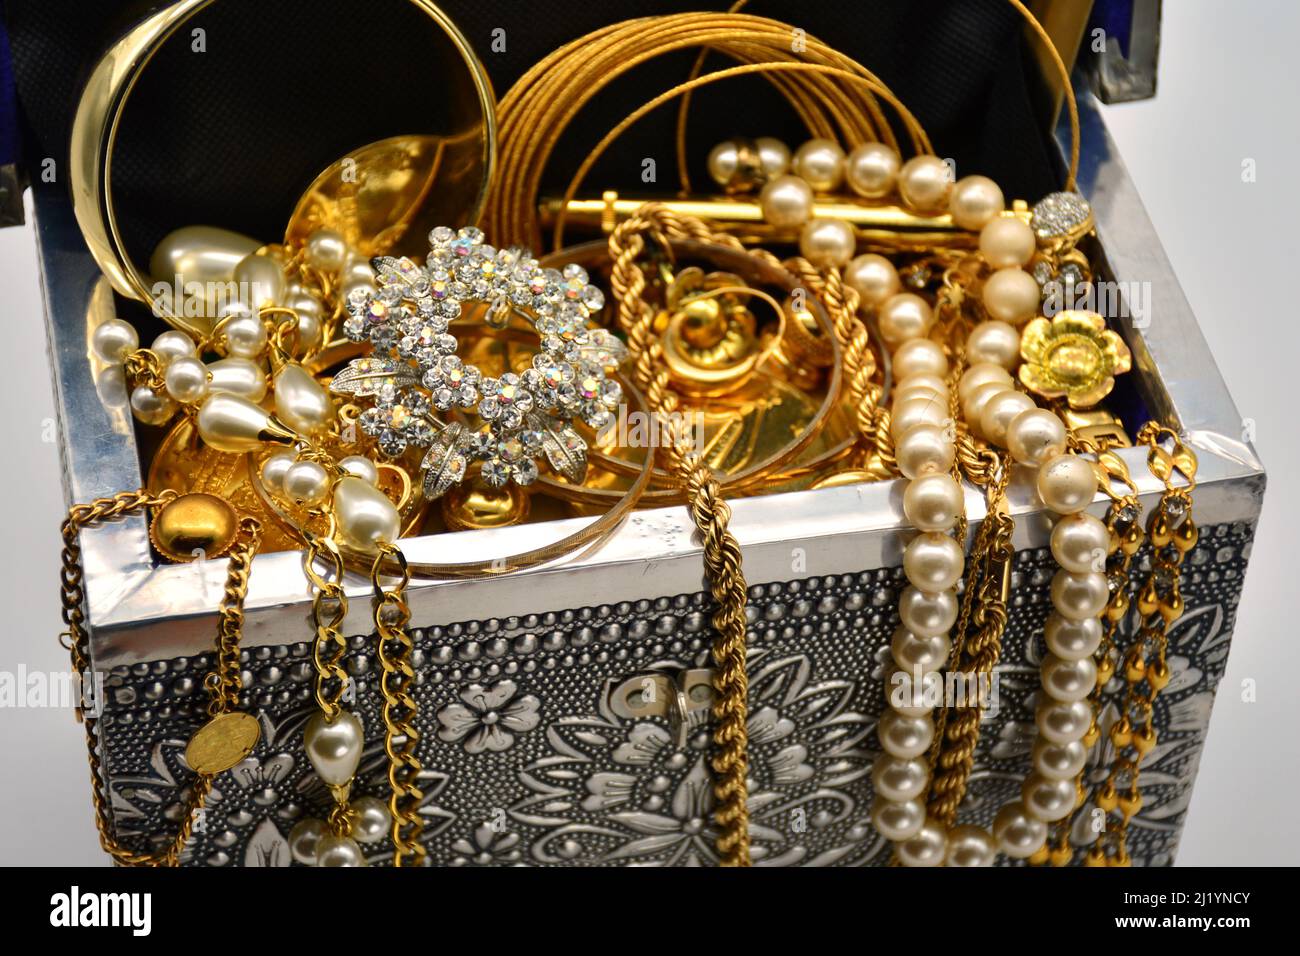 Un tesoro, cofre lleno de joyas, perlas, y oro, sobre fondo blanco Stock Photo